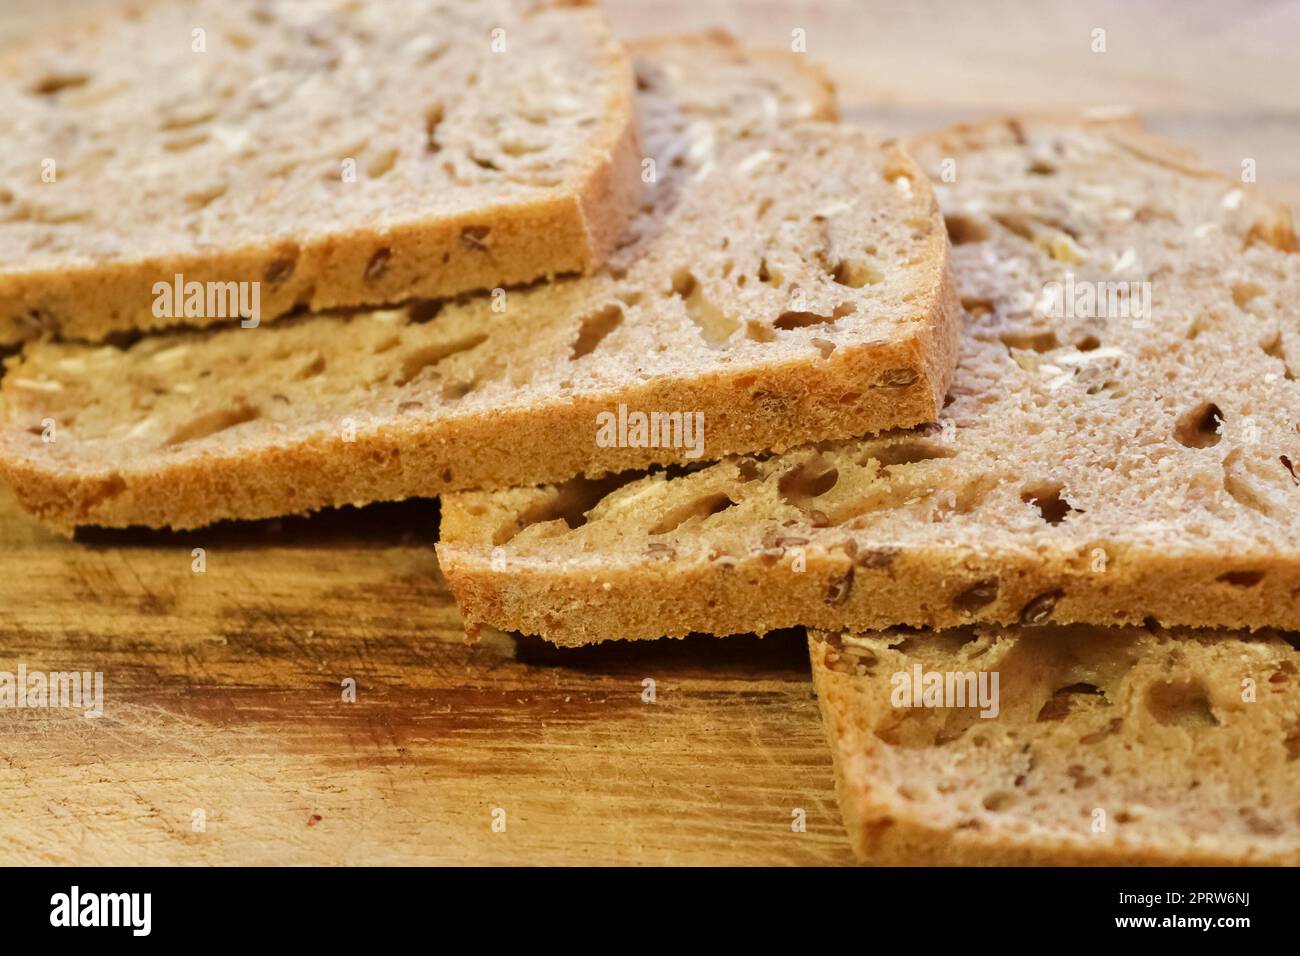 Selektive Fokussierung auf Scheiben von frisch gebackenem knusprigem Brot. Stockfoto